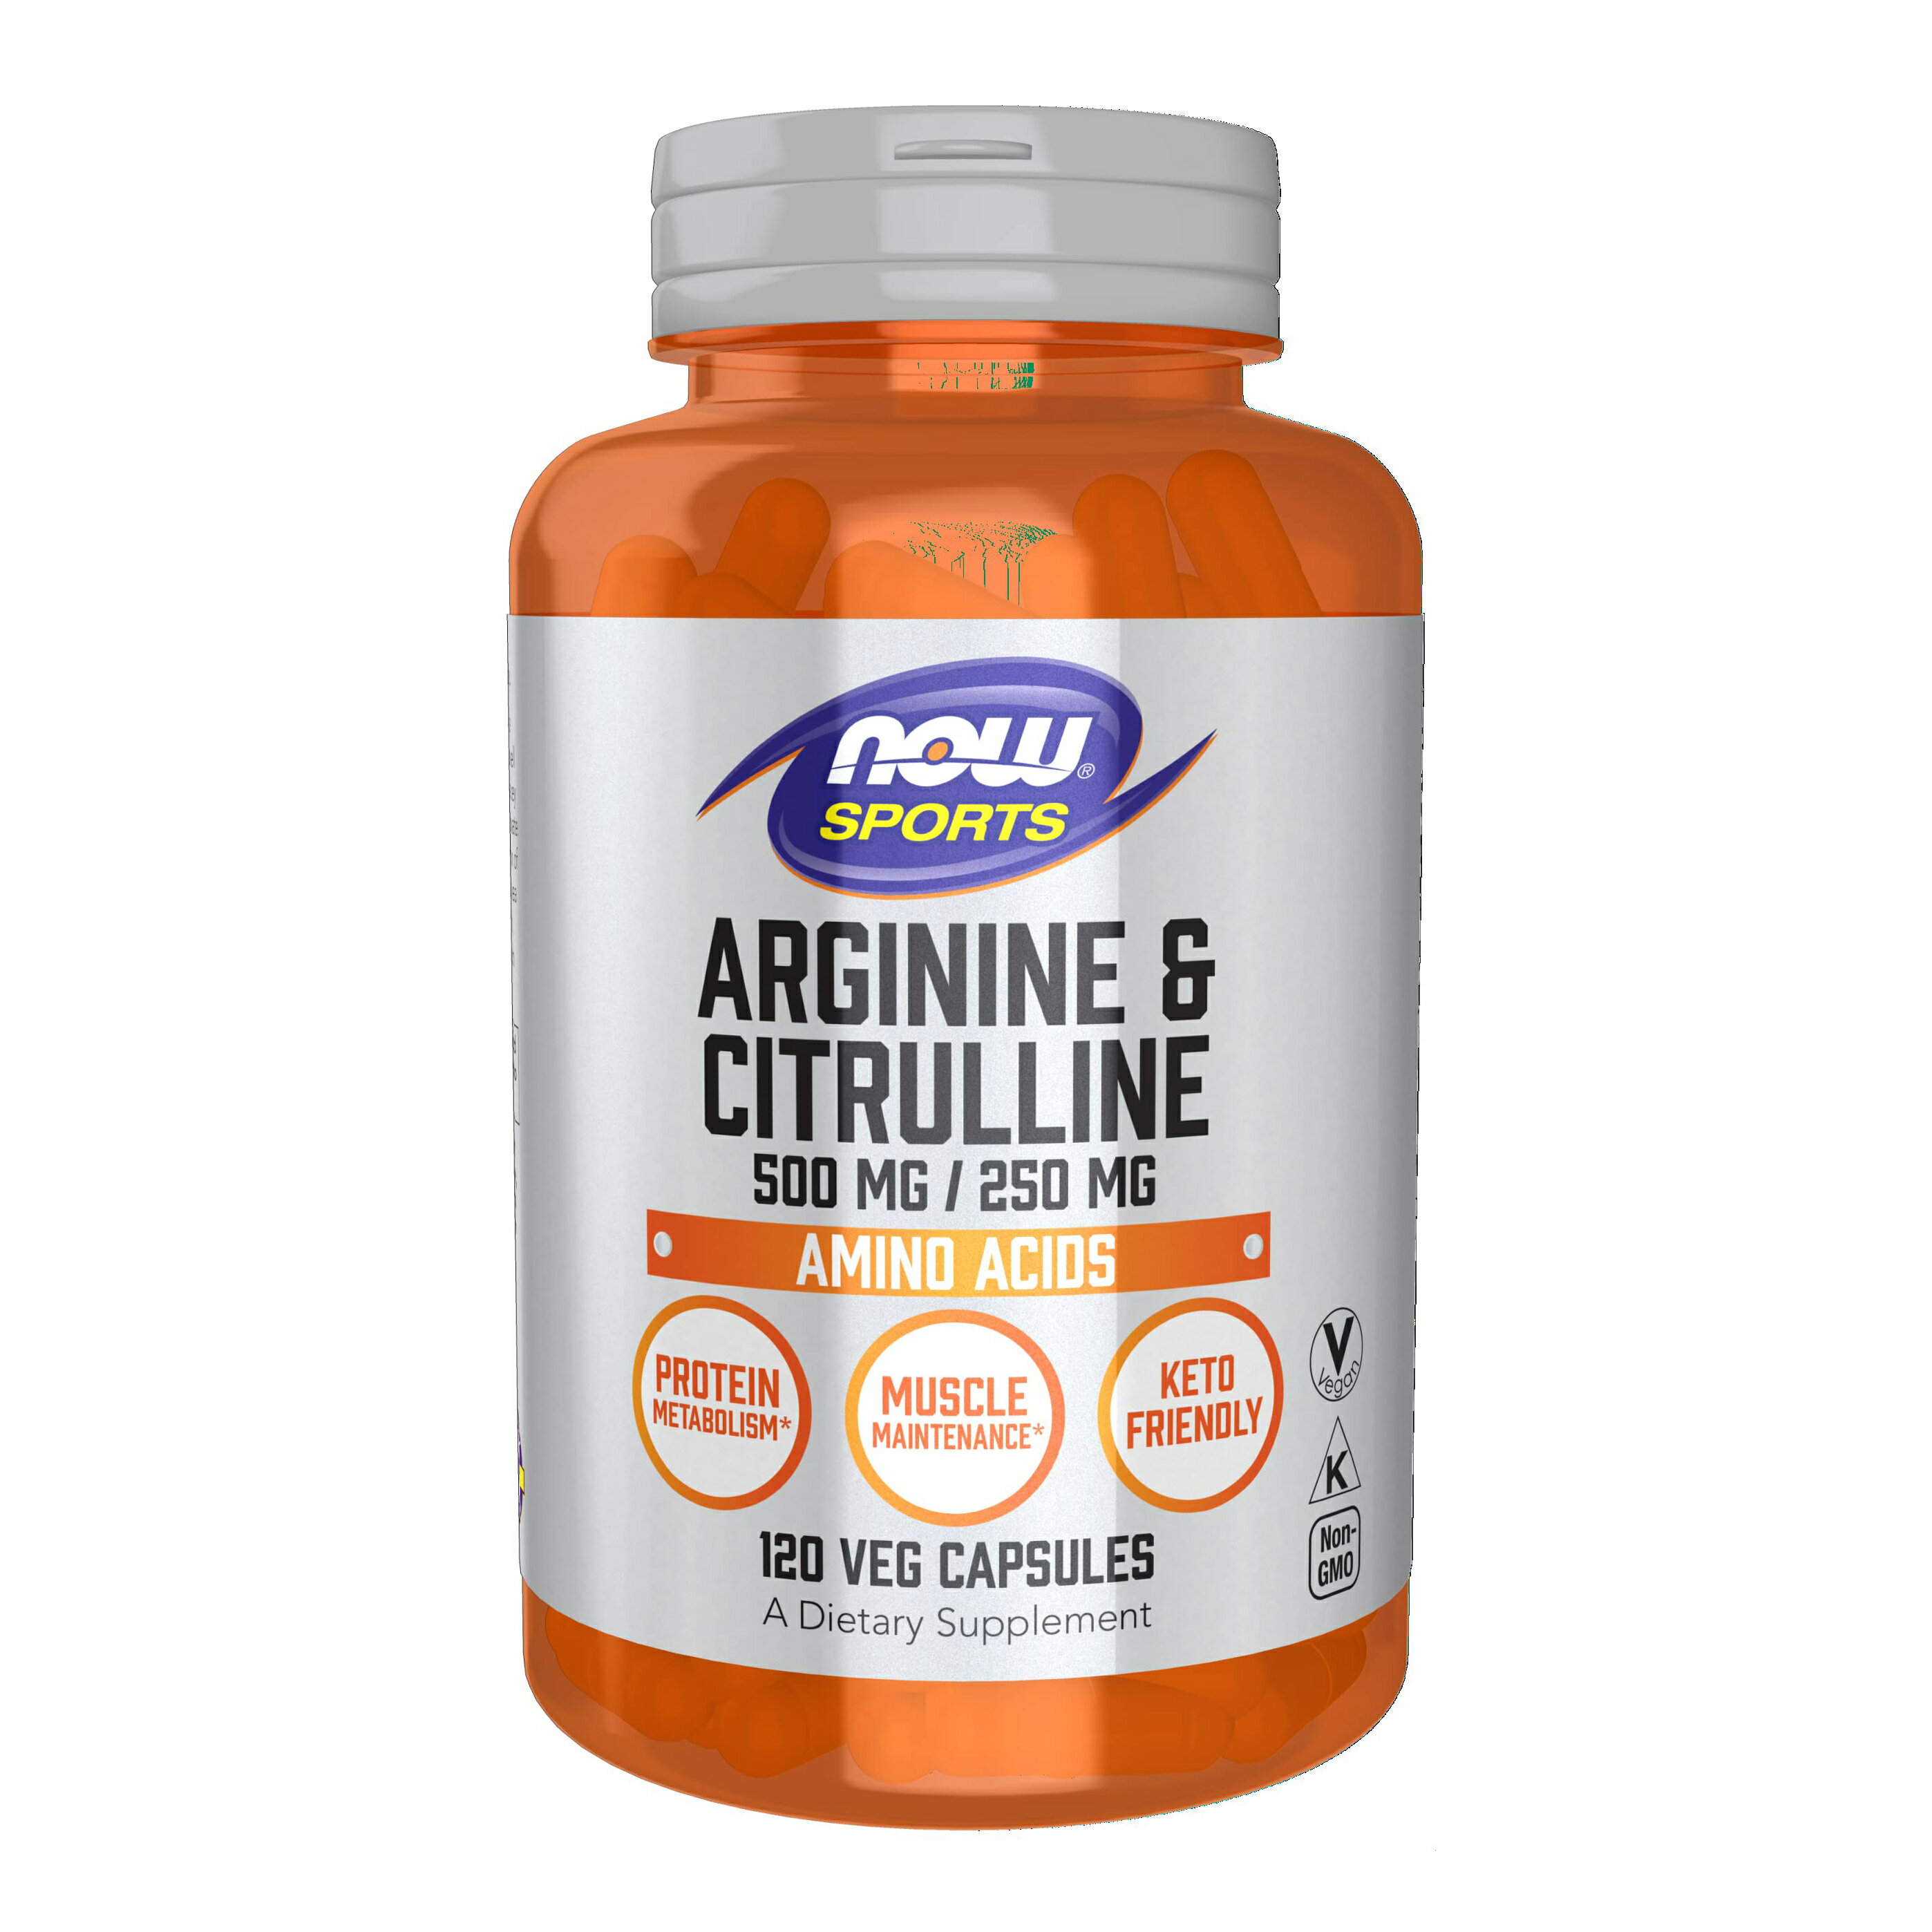 Now Foods Arginine & Citrulline Veg Capsules 120 Servings